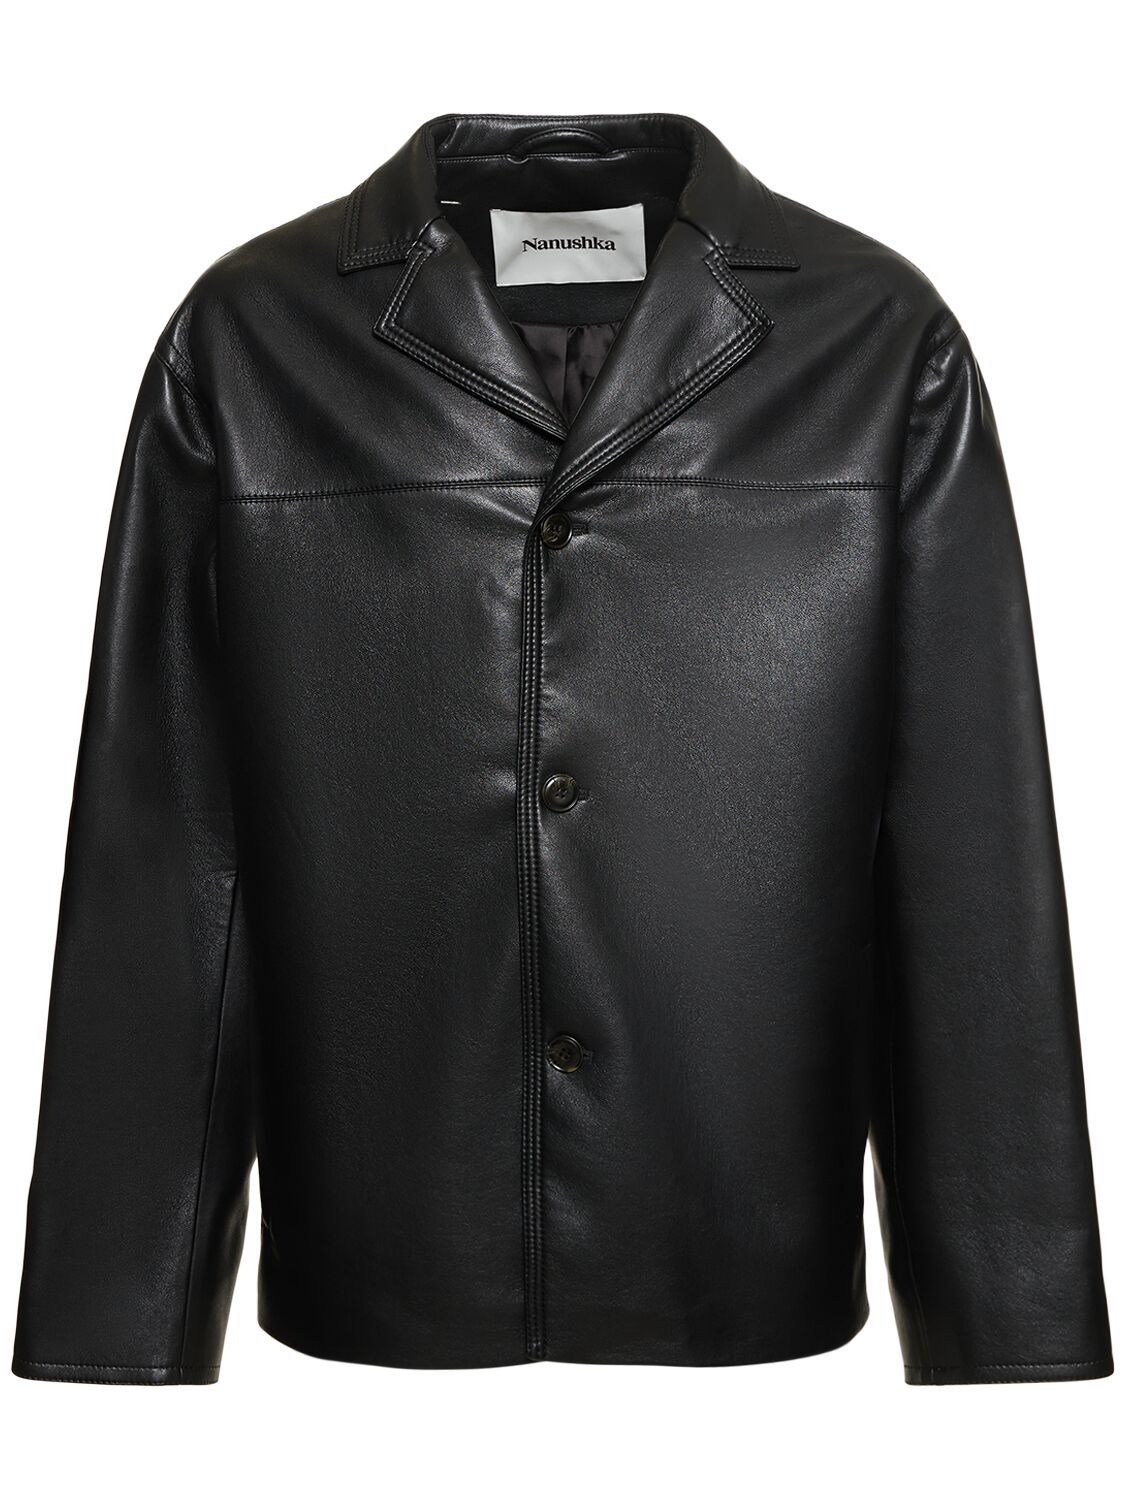 Regenerated Leather Jacket – MEN > CLOTHING > JACKETS